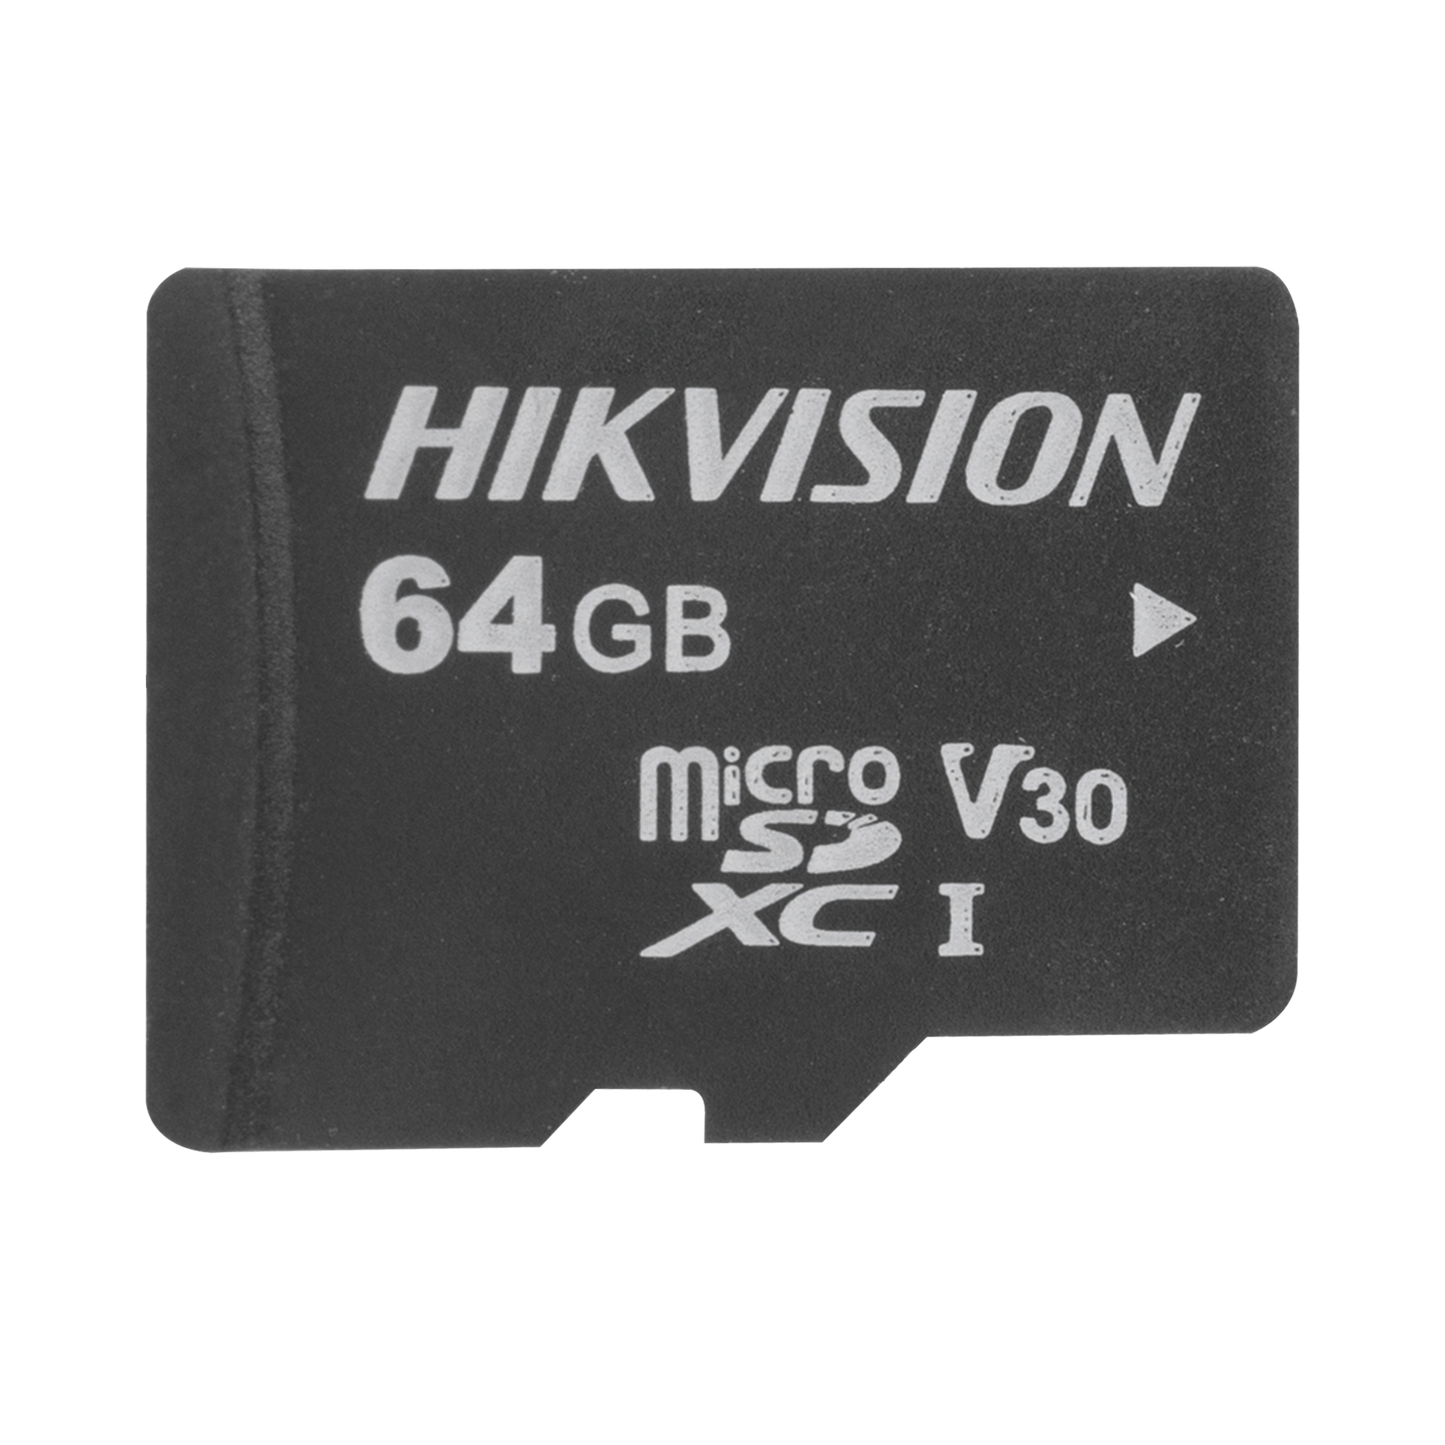 Memoria microSD / Clase 10 de 64 GB / Especializada Para Videovigilancia (Uso 24/7) / Compatibles con cámaras HIKVISION y Otras Marcas